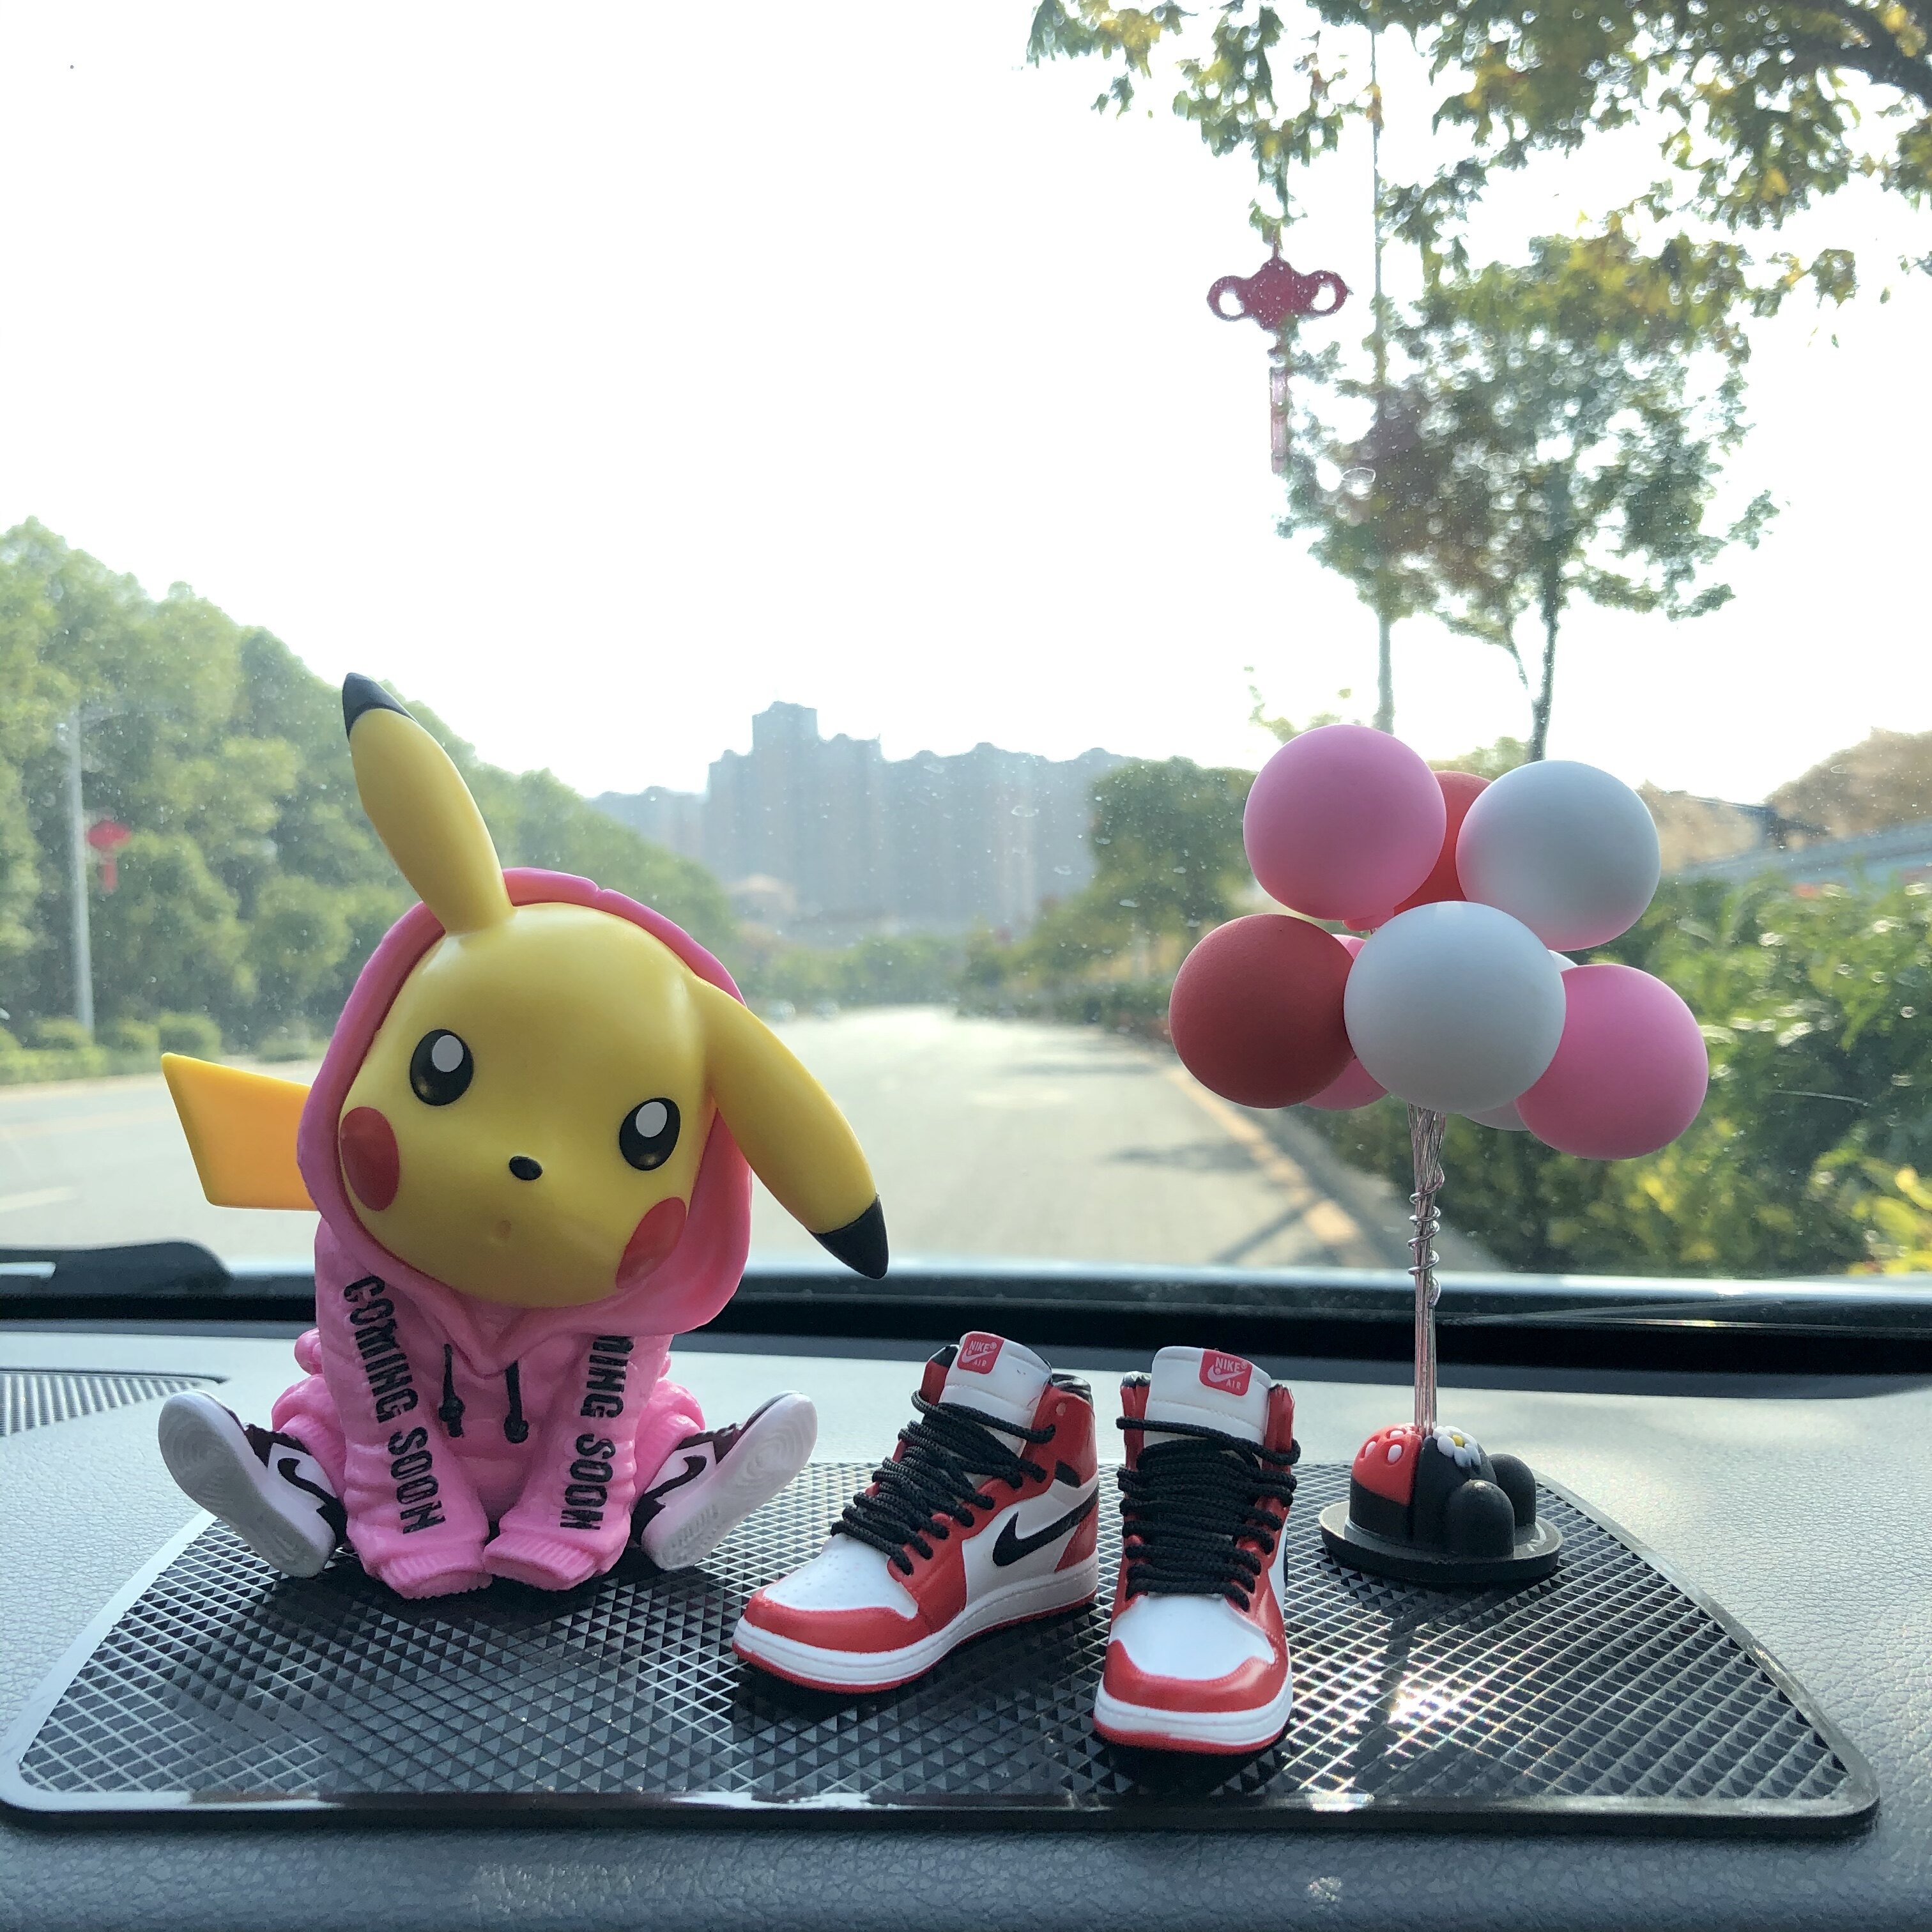 เครื่องประดับรถยนต์บุคลิกภาพความคิดสร้างสรรค์ PikachuAJรองเท้าผ้าใบมือทำรถตกแต่งตุ๊กตาสั่นเสียงสุทธิเครื่องประดับห้องสีแดง